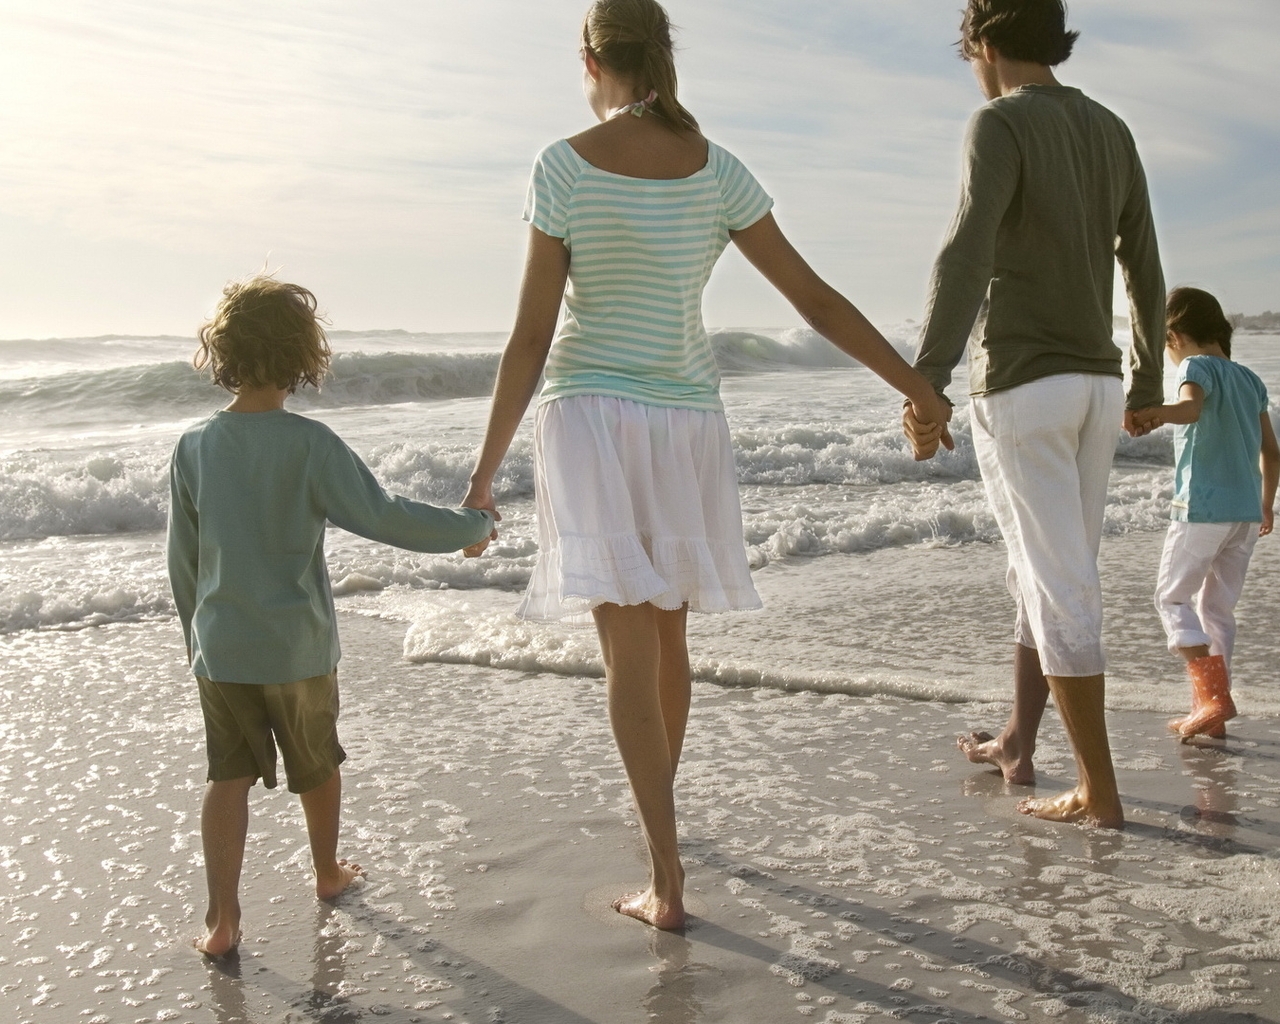 Картинка: Семья, люди, папа, мама, дети, море, волны, морская пена, берег, песок